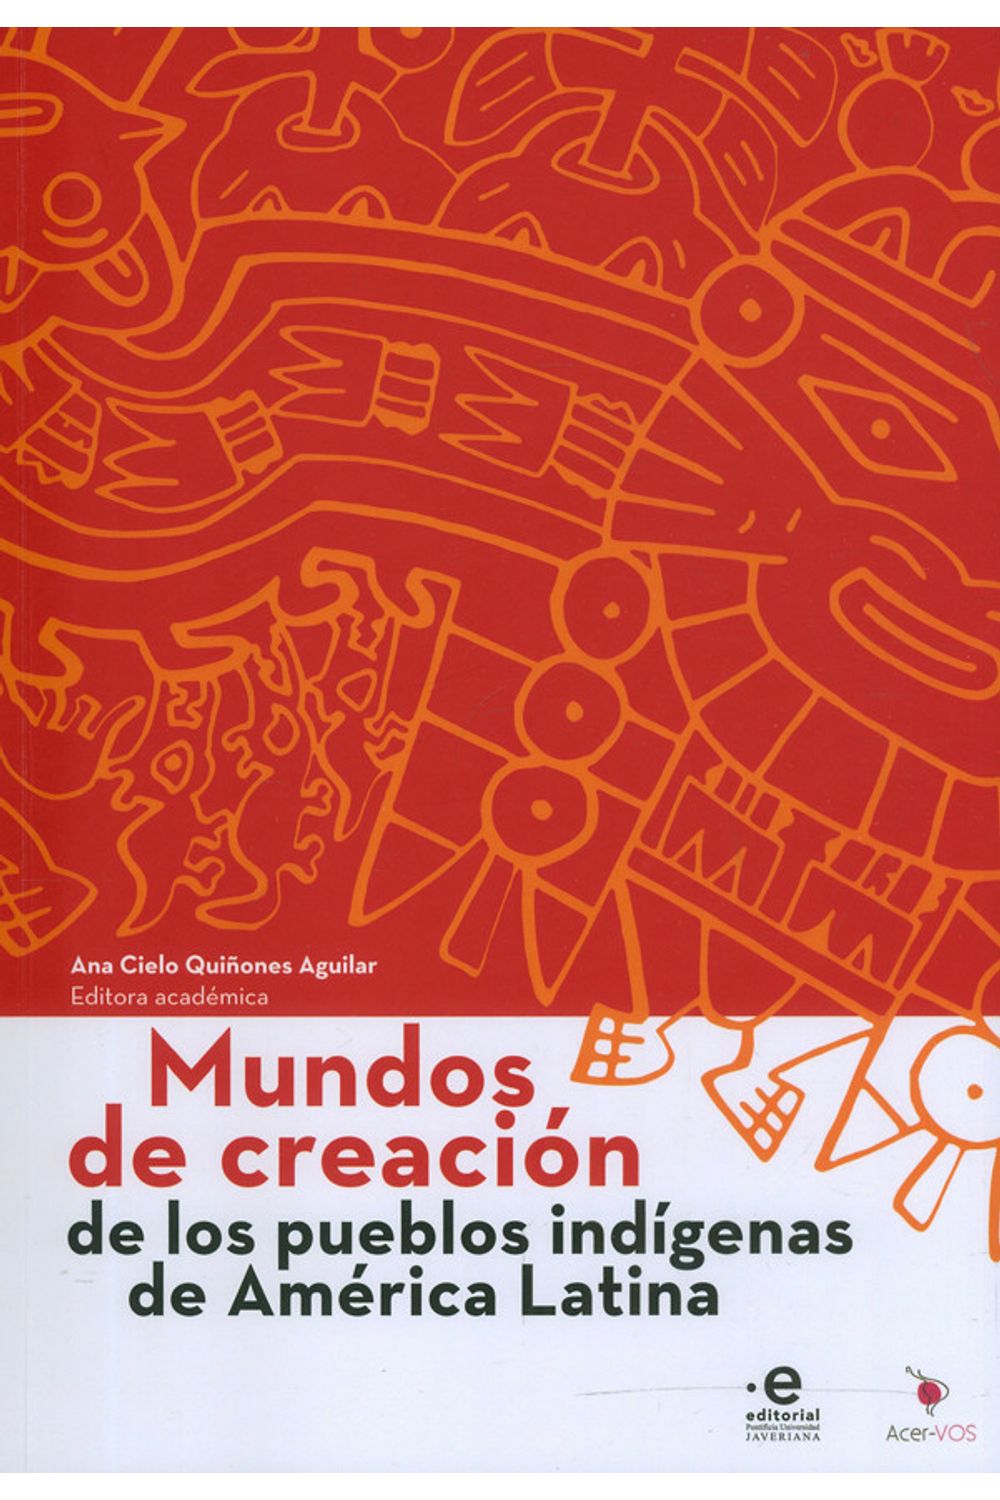 mundos-de-creacion-de-los-pueblos-indigenas-de-america-latina-9789587815955-upuj